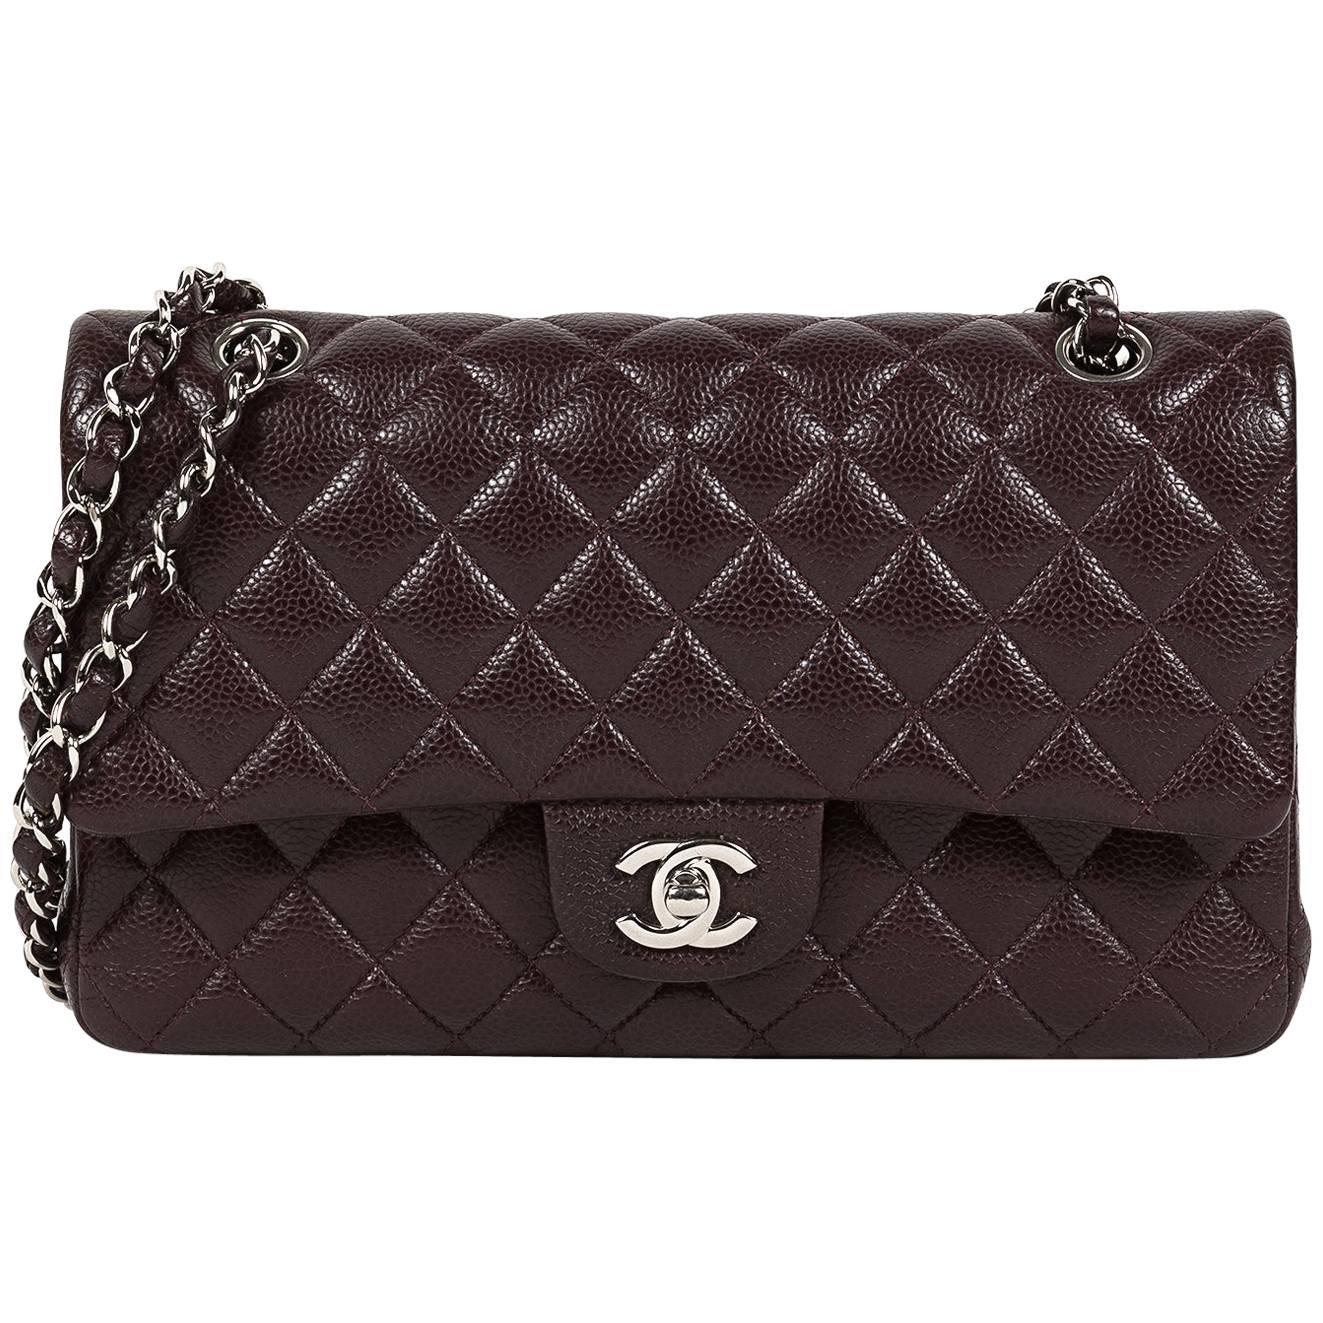 2014 Chanel 2.55 Bordeaux Caviar Flap Bag For Sale